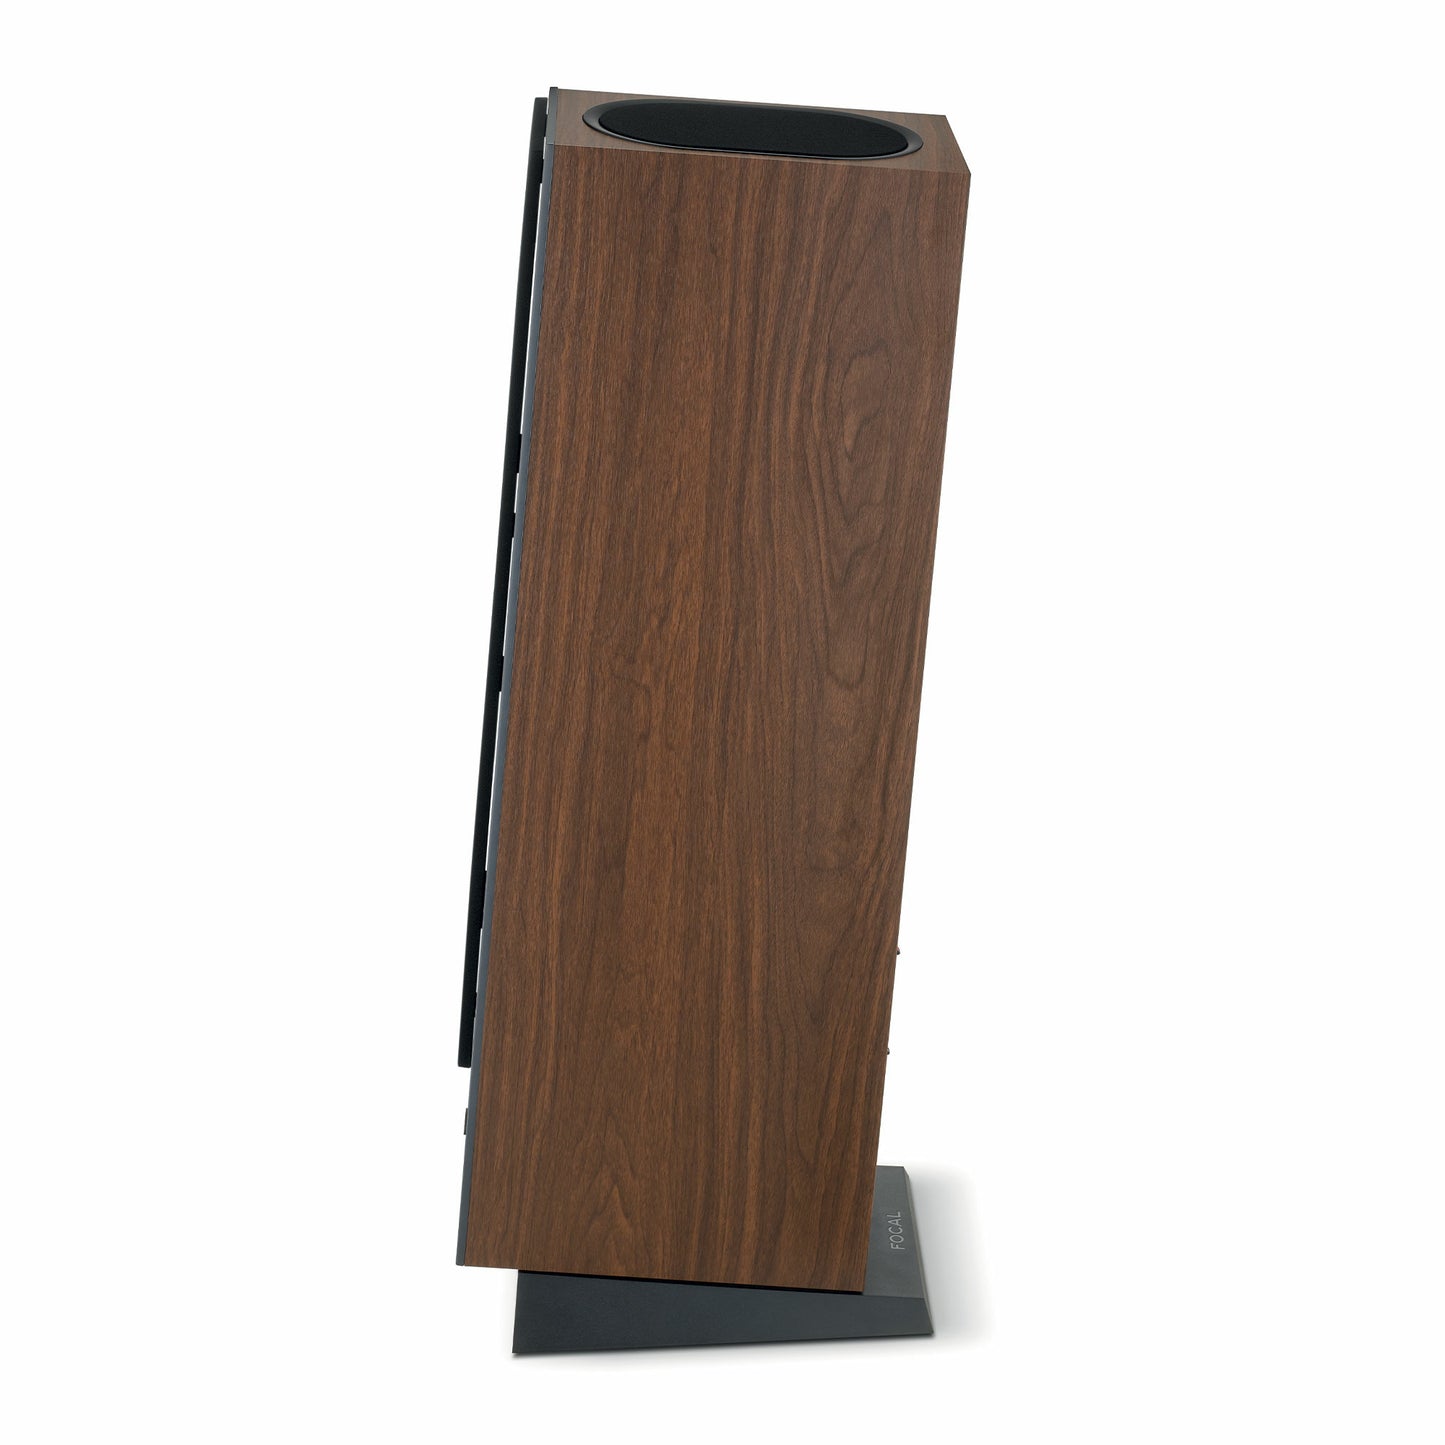 Focal Theva N°3-D Floorstanding Speaker (Single)